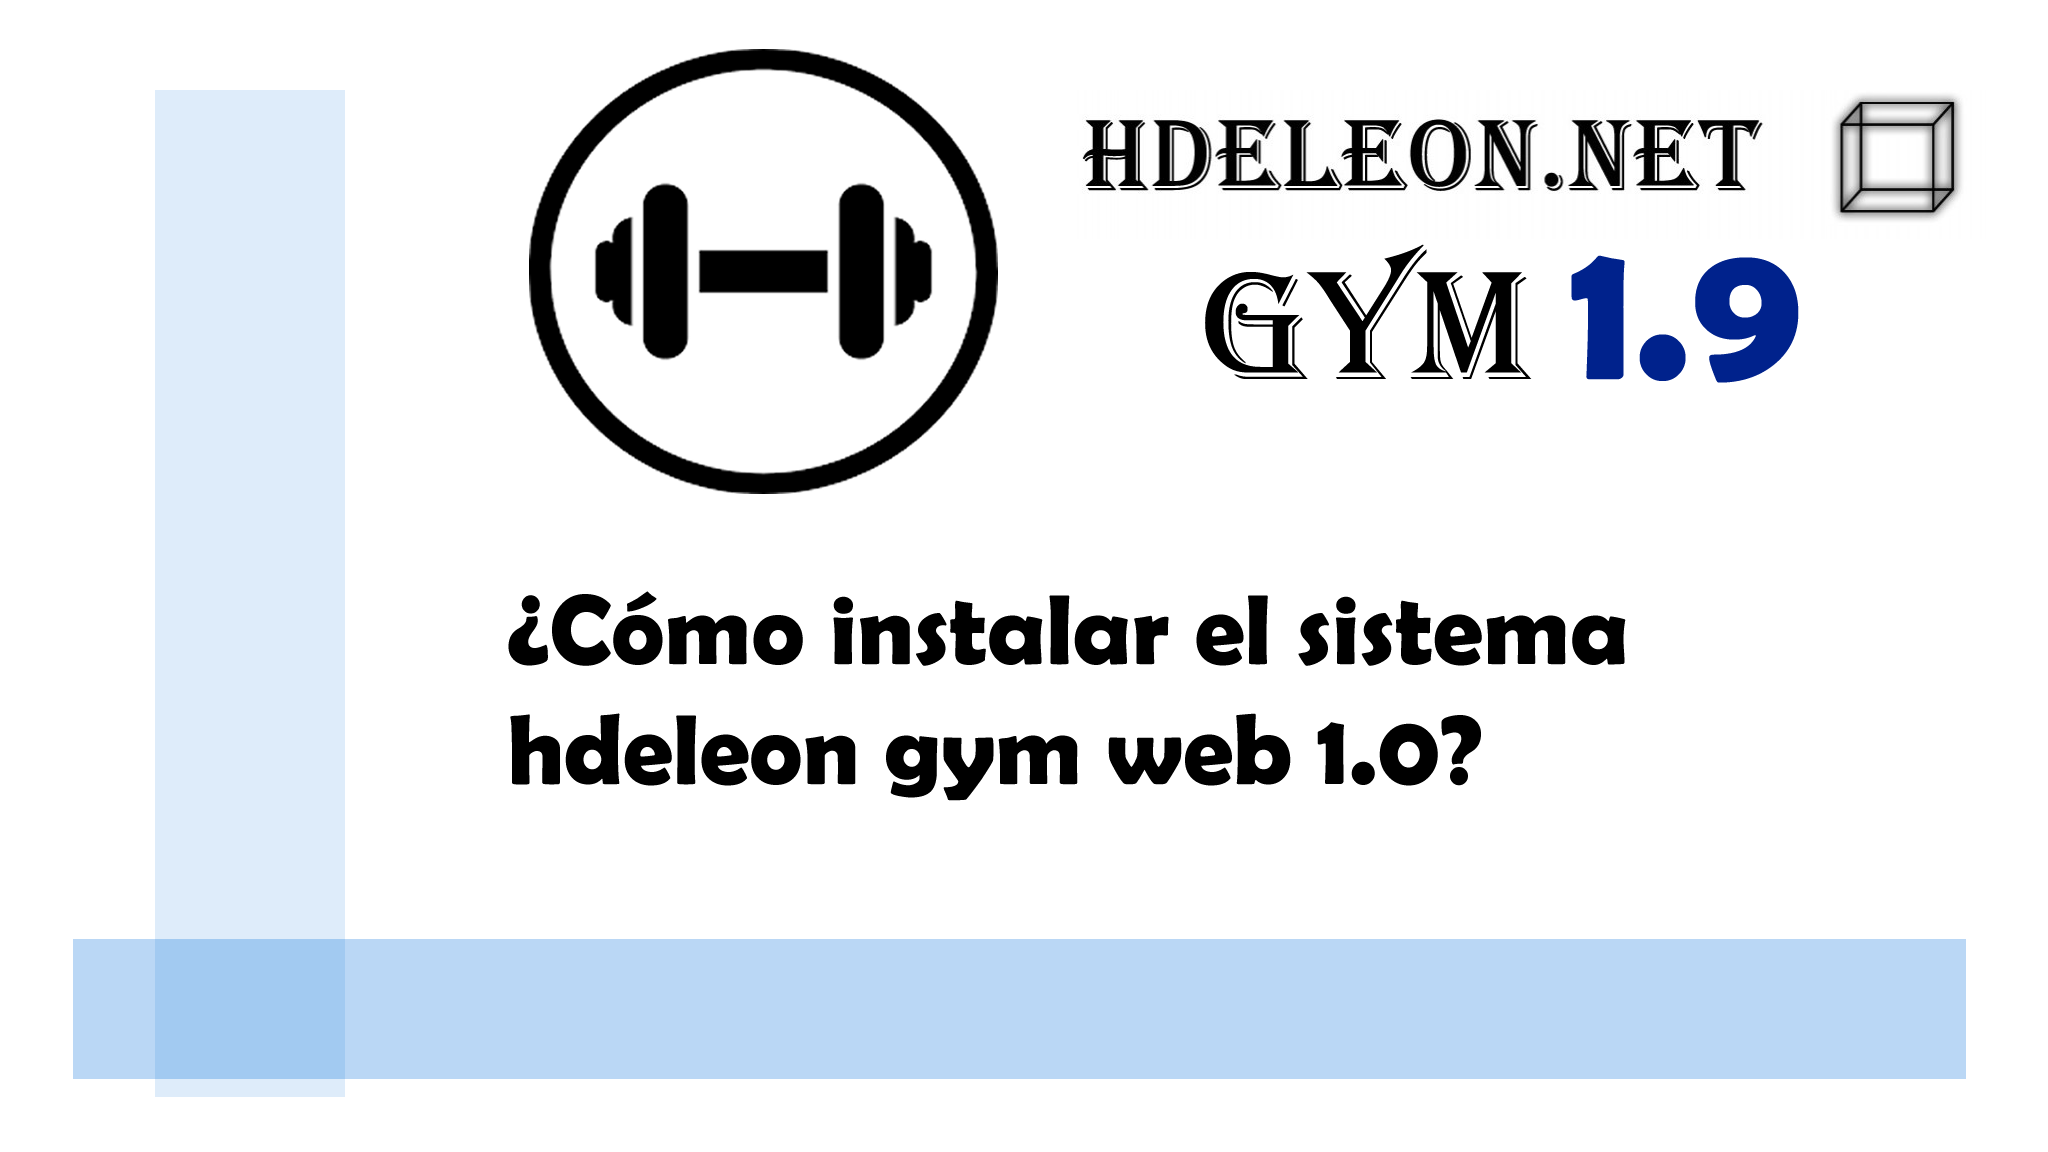 ¿Cómo instalar el sistema hdeleon gym web 1.0?, Gratuito en la versión gym hdeleon 1.9